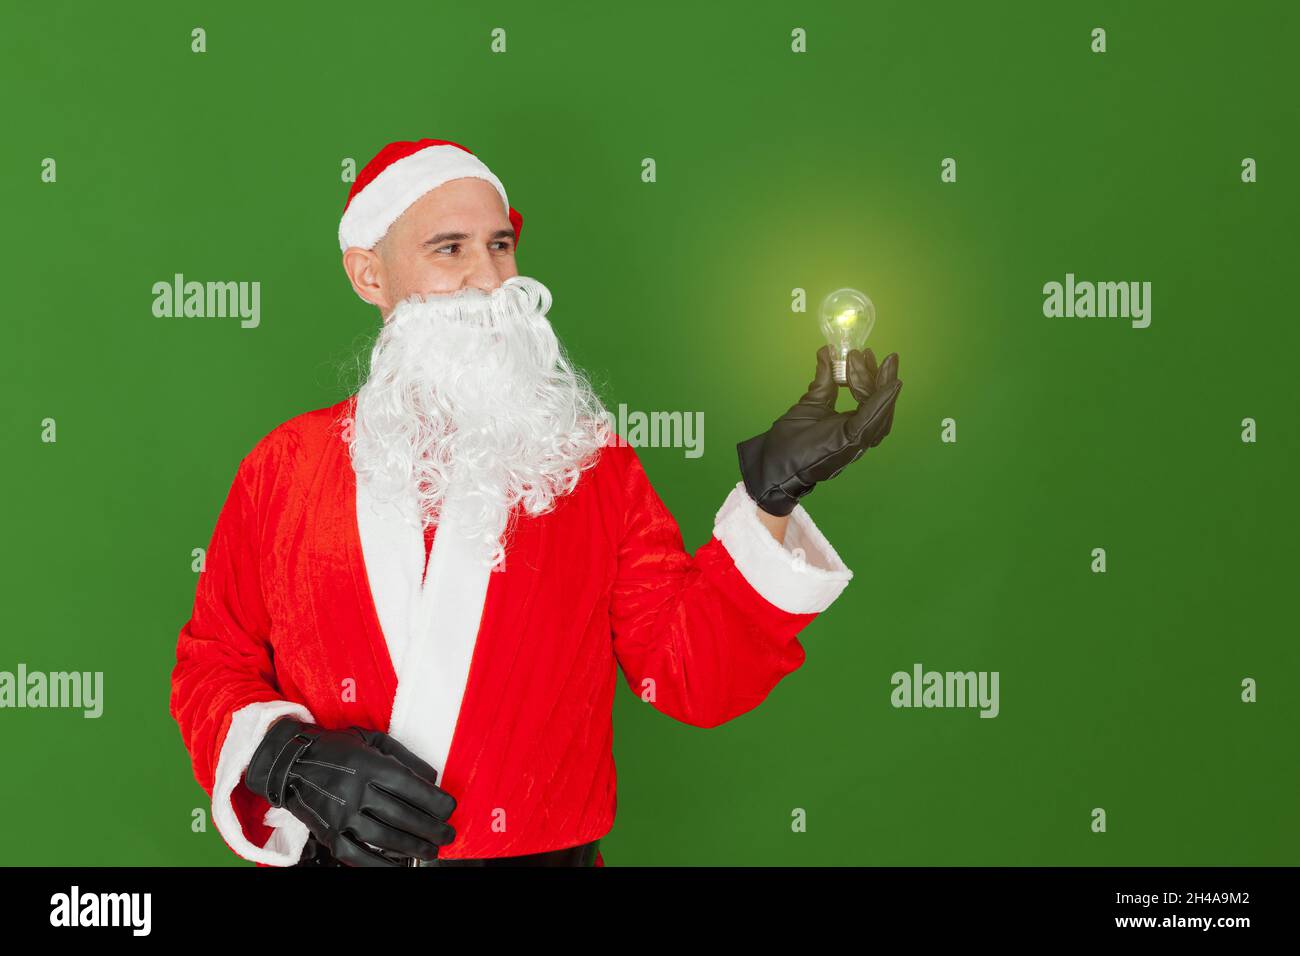 Ein Mann, der als Weihnachtsmann gekleidet ist, hält eine Glühbirne mit einer Hand, die leuchtet und Licht ausstrahlt. Der Hintergrund ist grün. Stockfoto